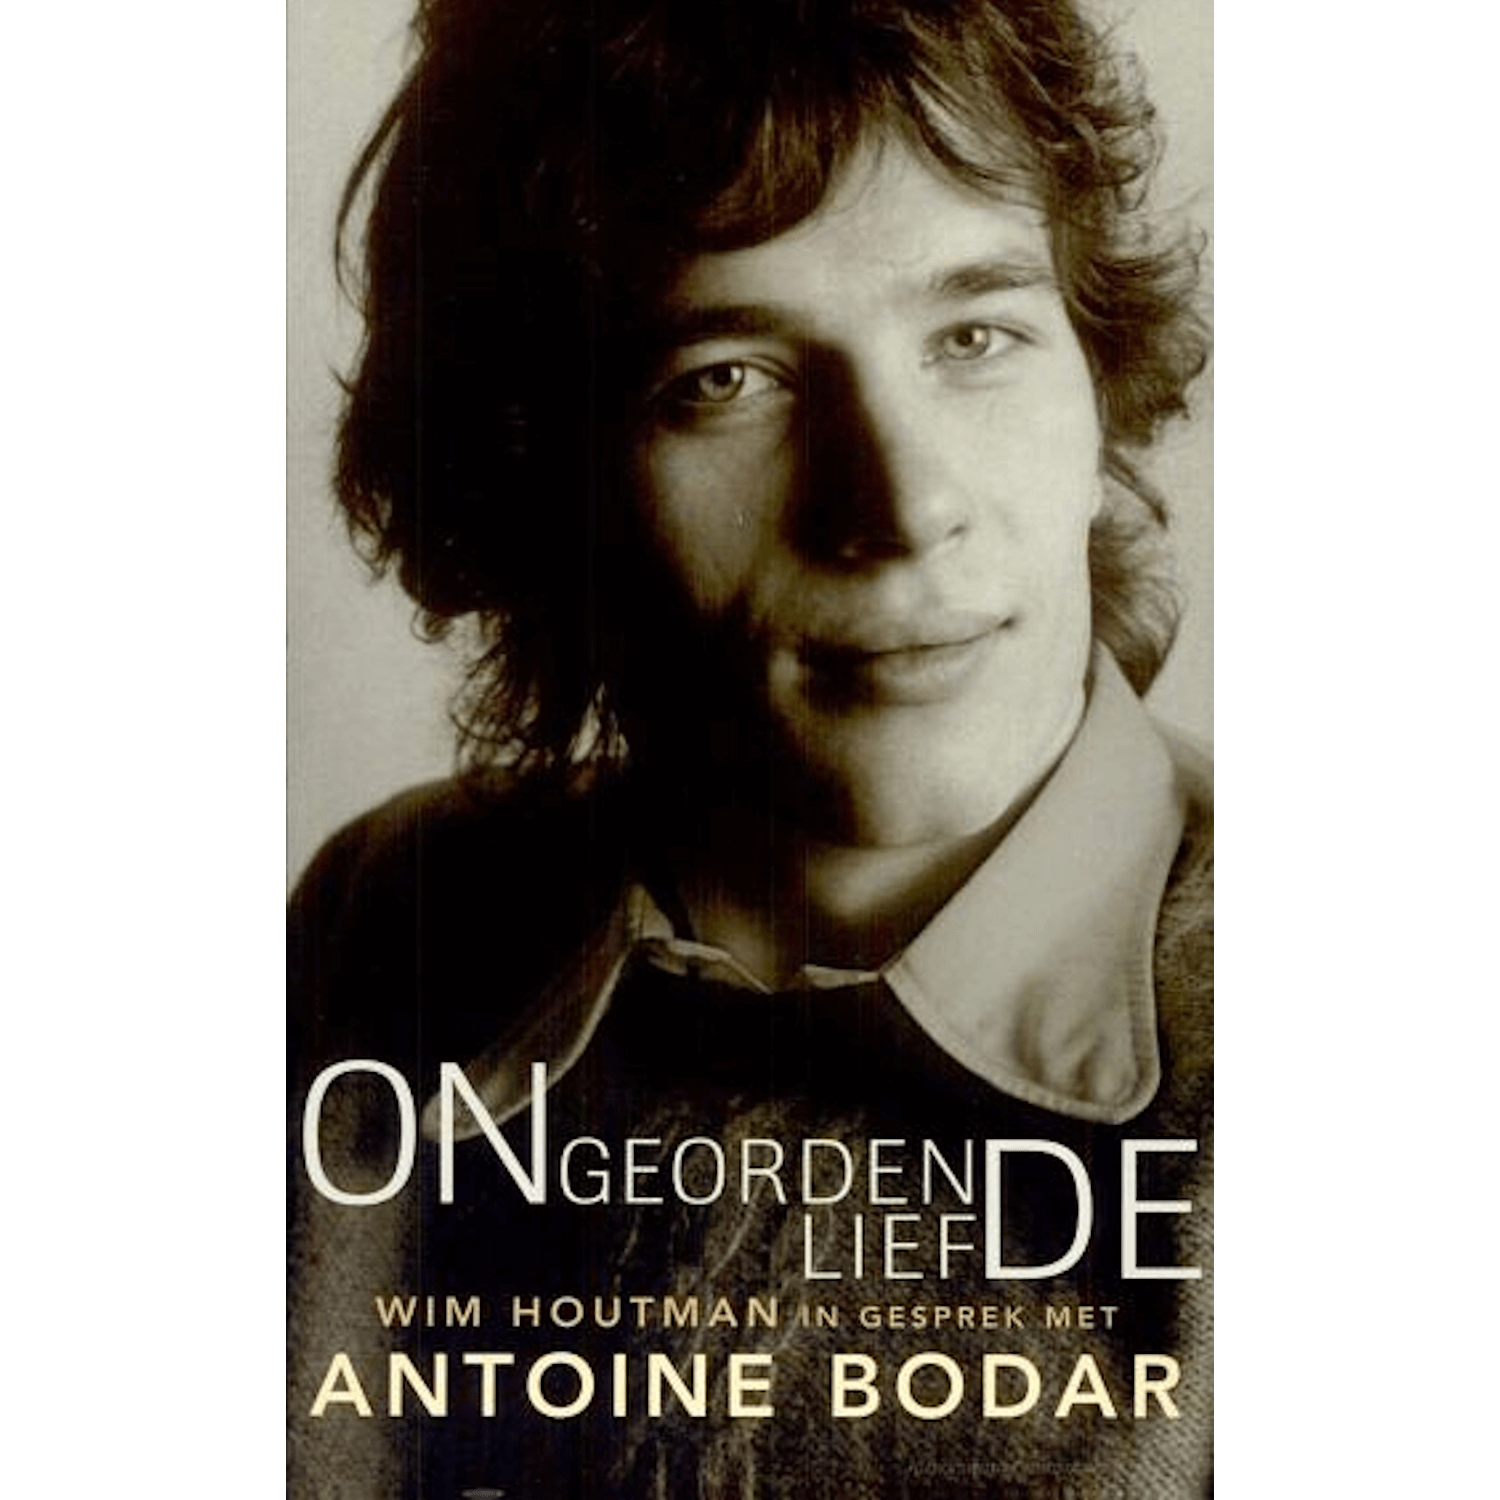 Antoine Bodar - ONGEORDENDE LIEFDE